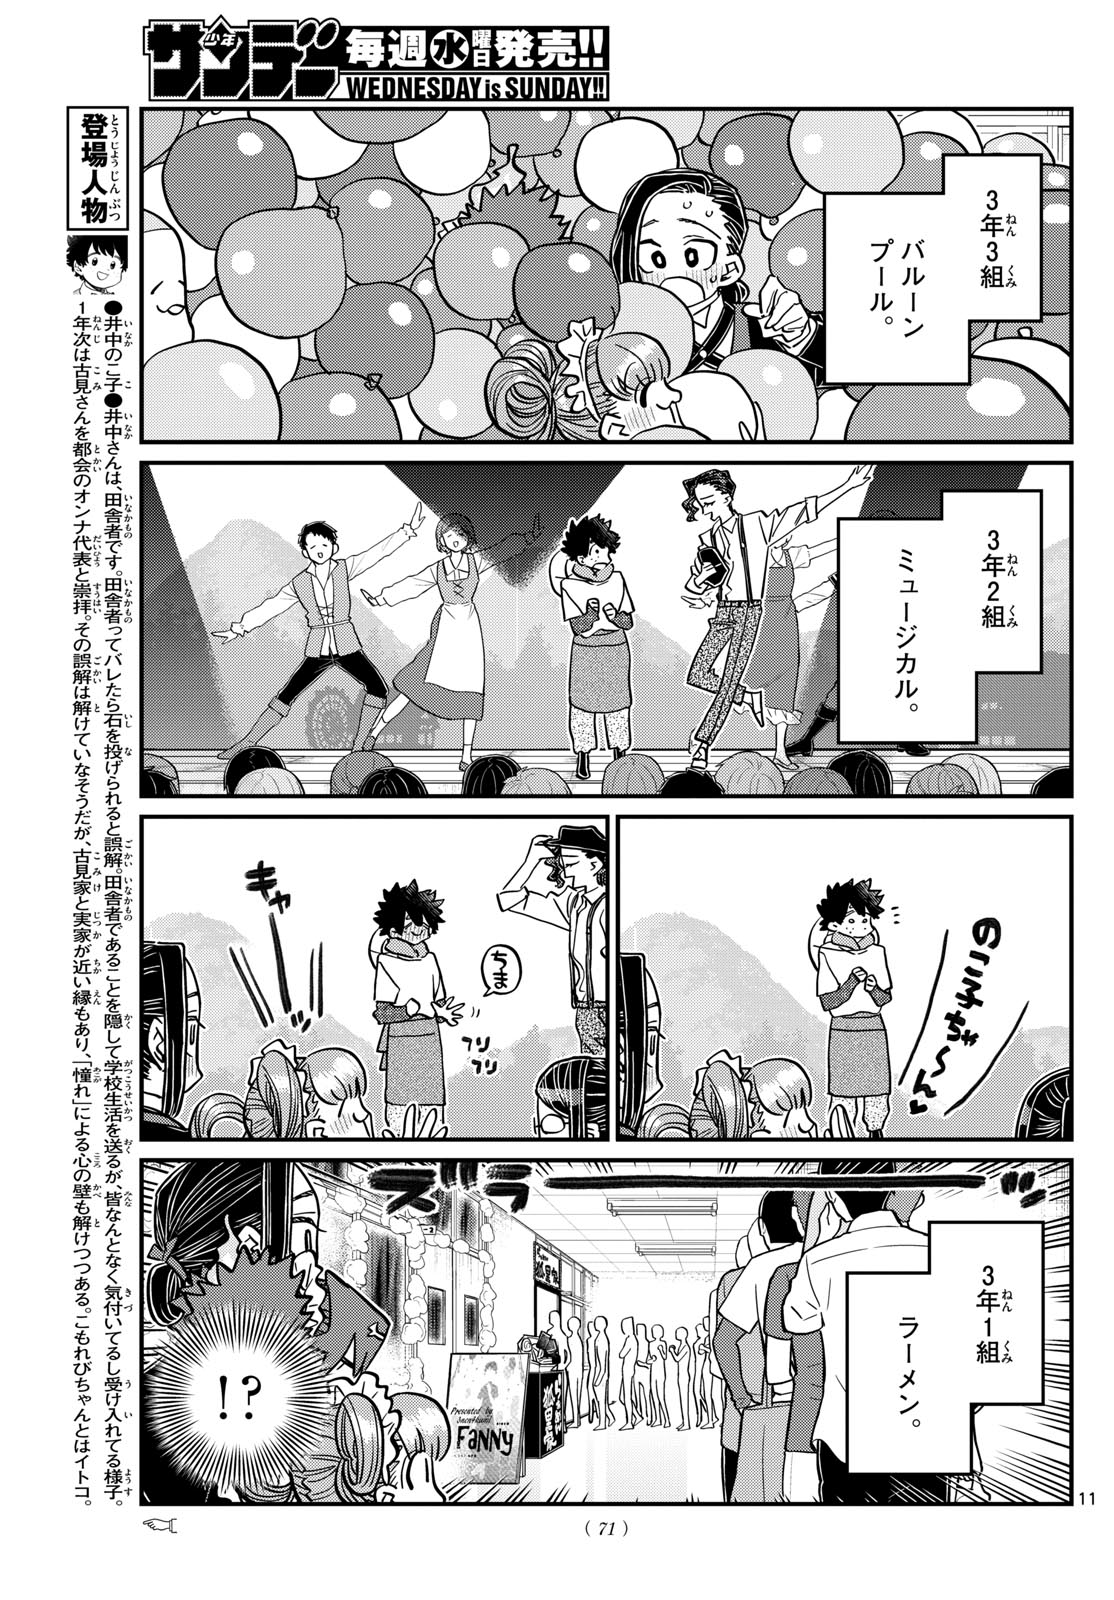 Komi-san wa Komyushou Desu - Chapter 451 - Page 11